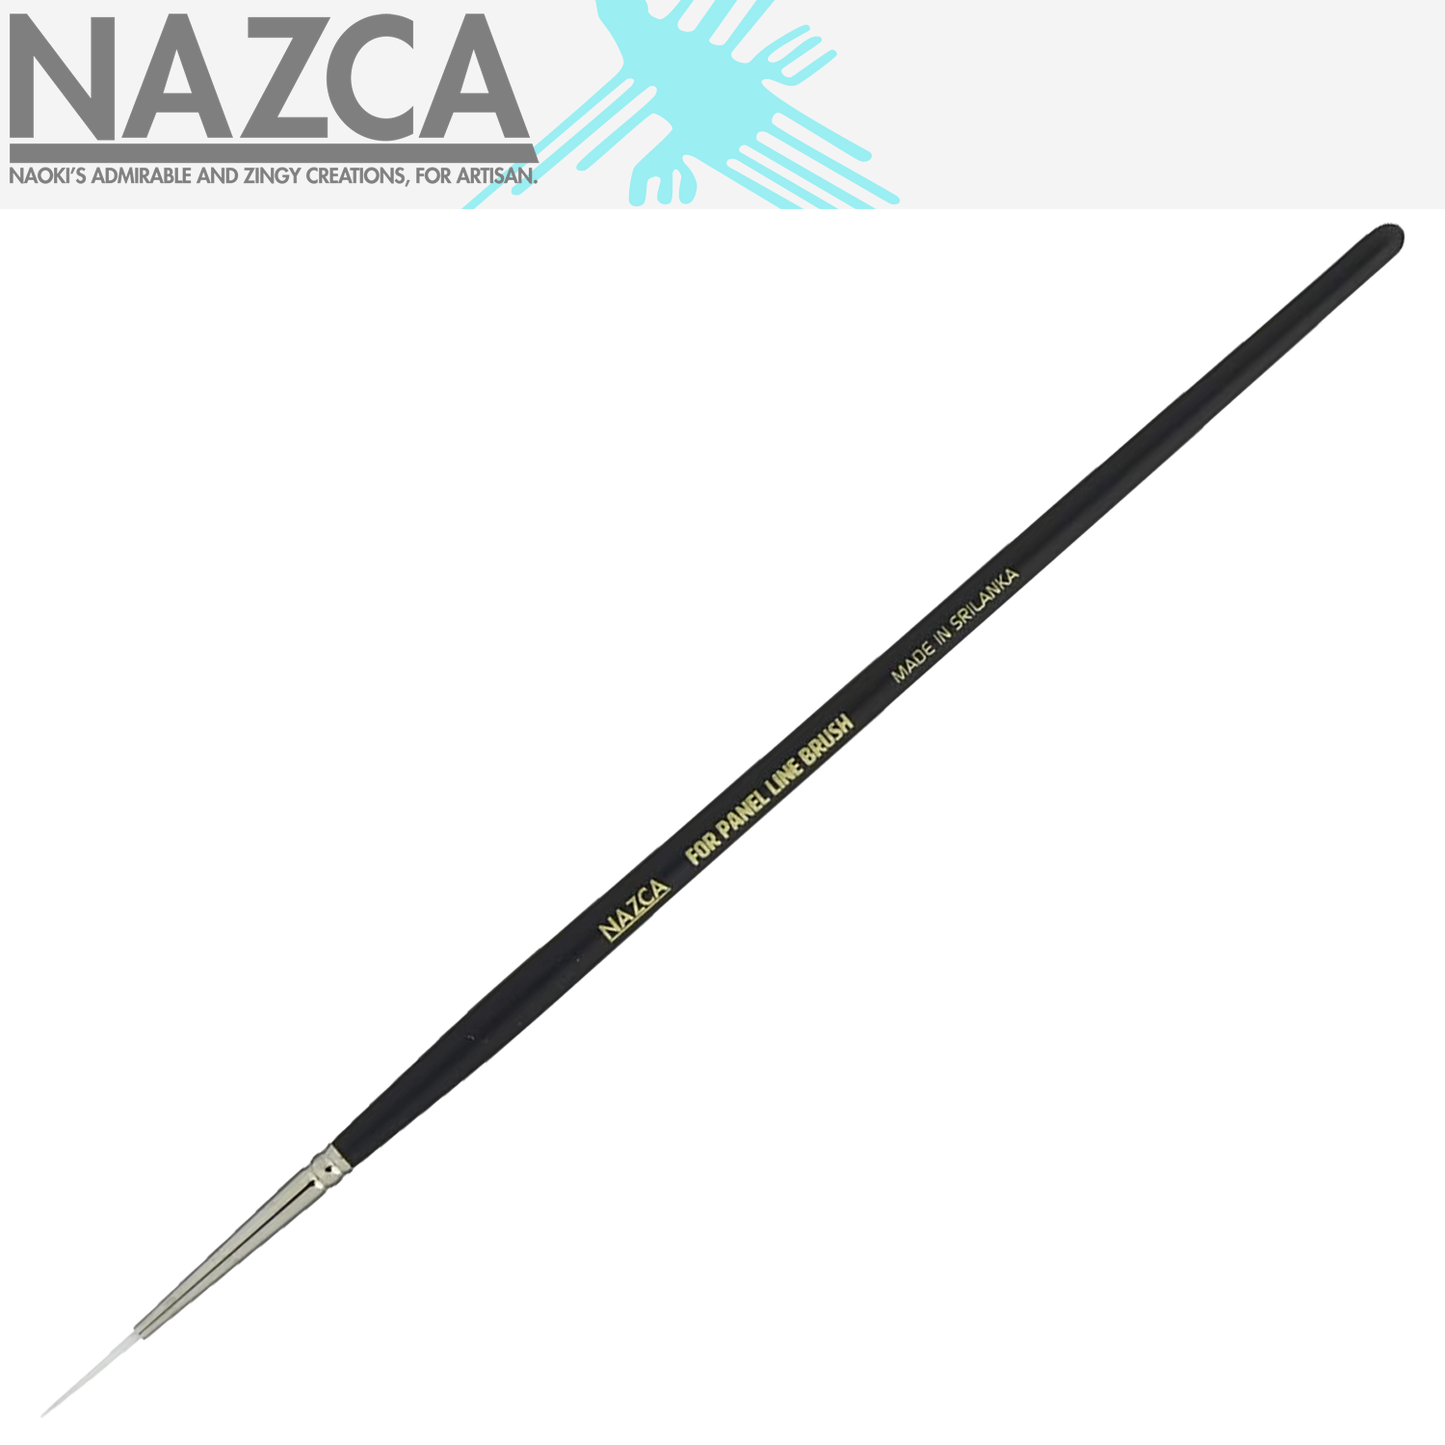 Gaianotes - NAZCA Panel Lining Brush [NB-003] - ShokuninGunpla